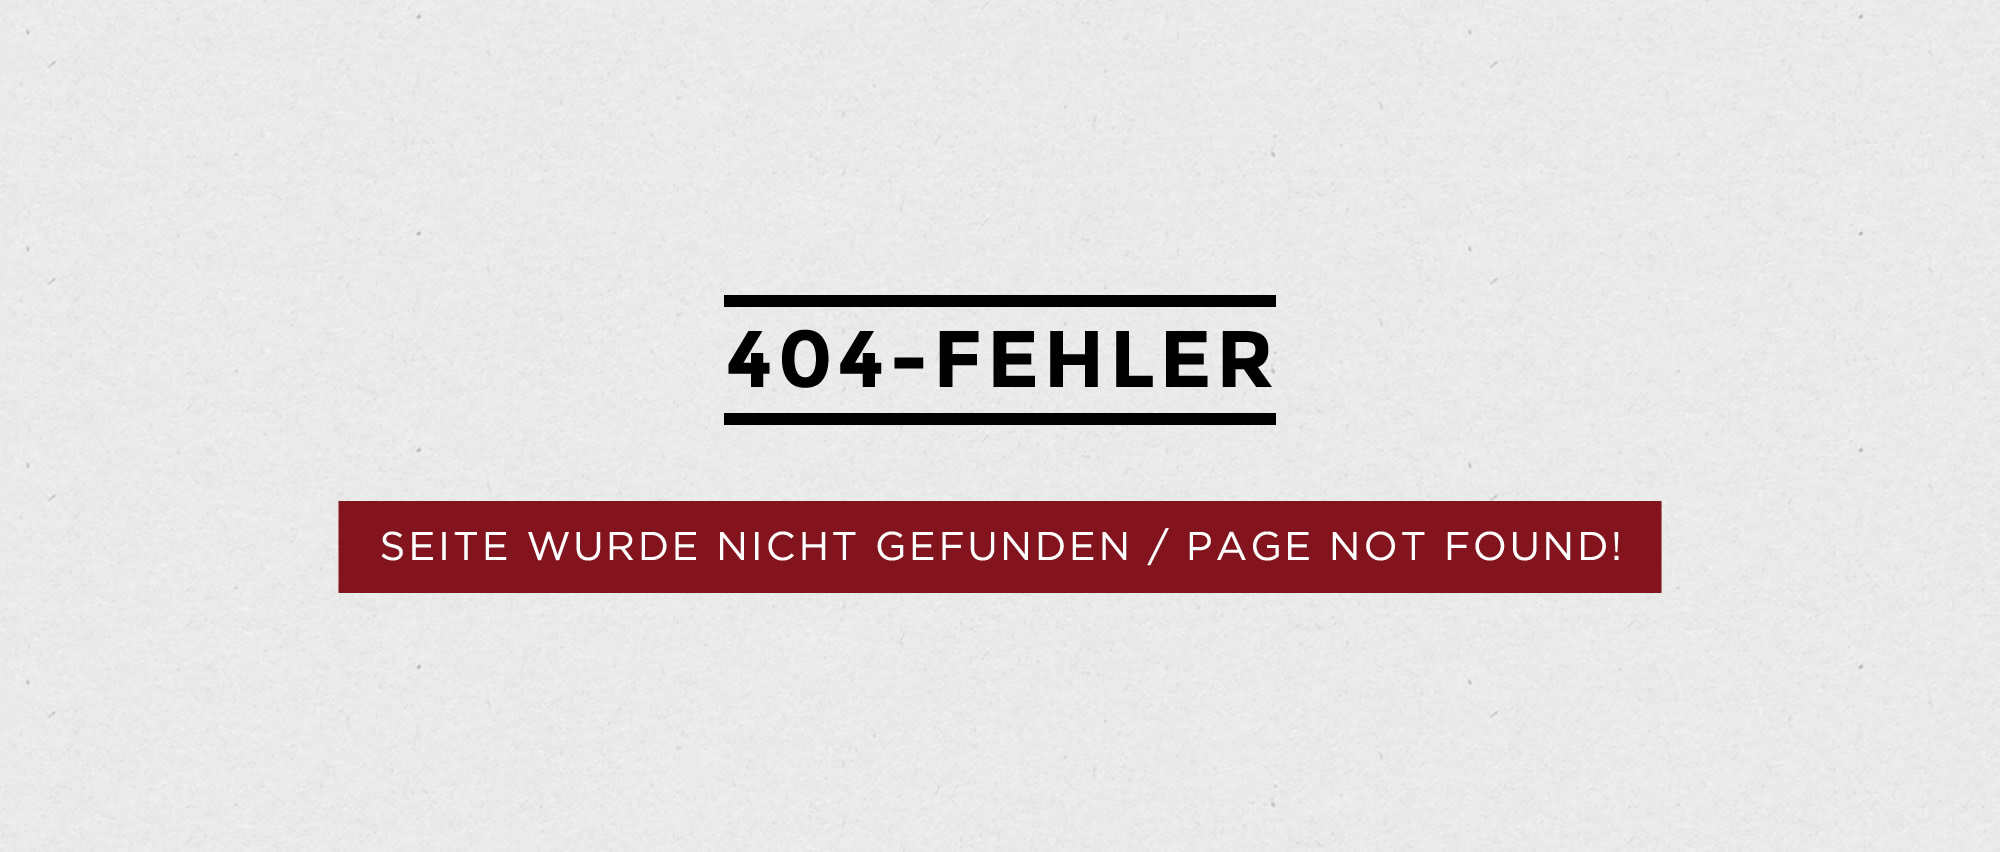 404-Fehler - Seite wurde nicht gefunden